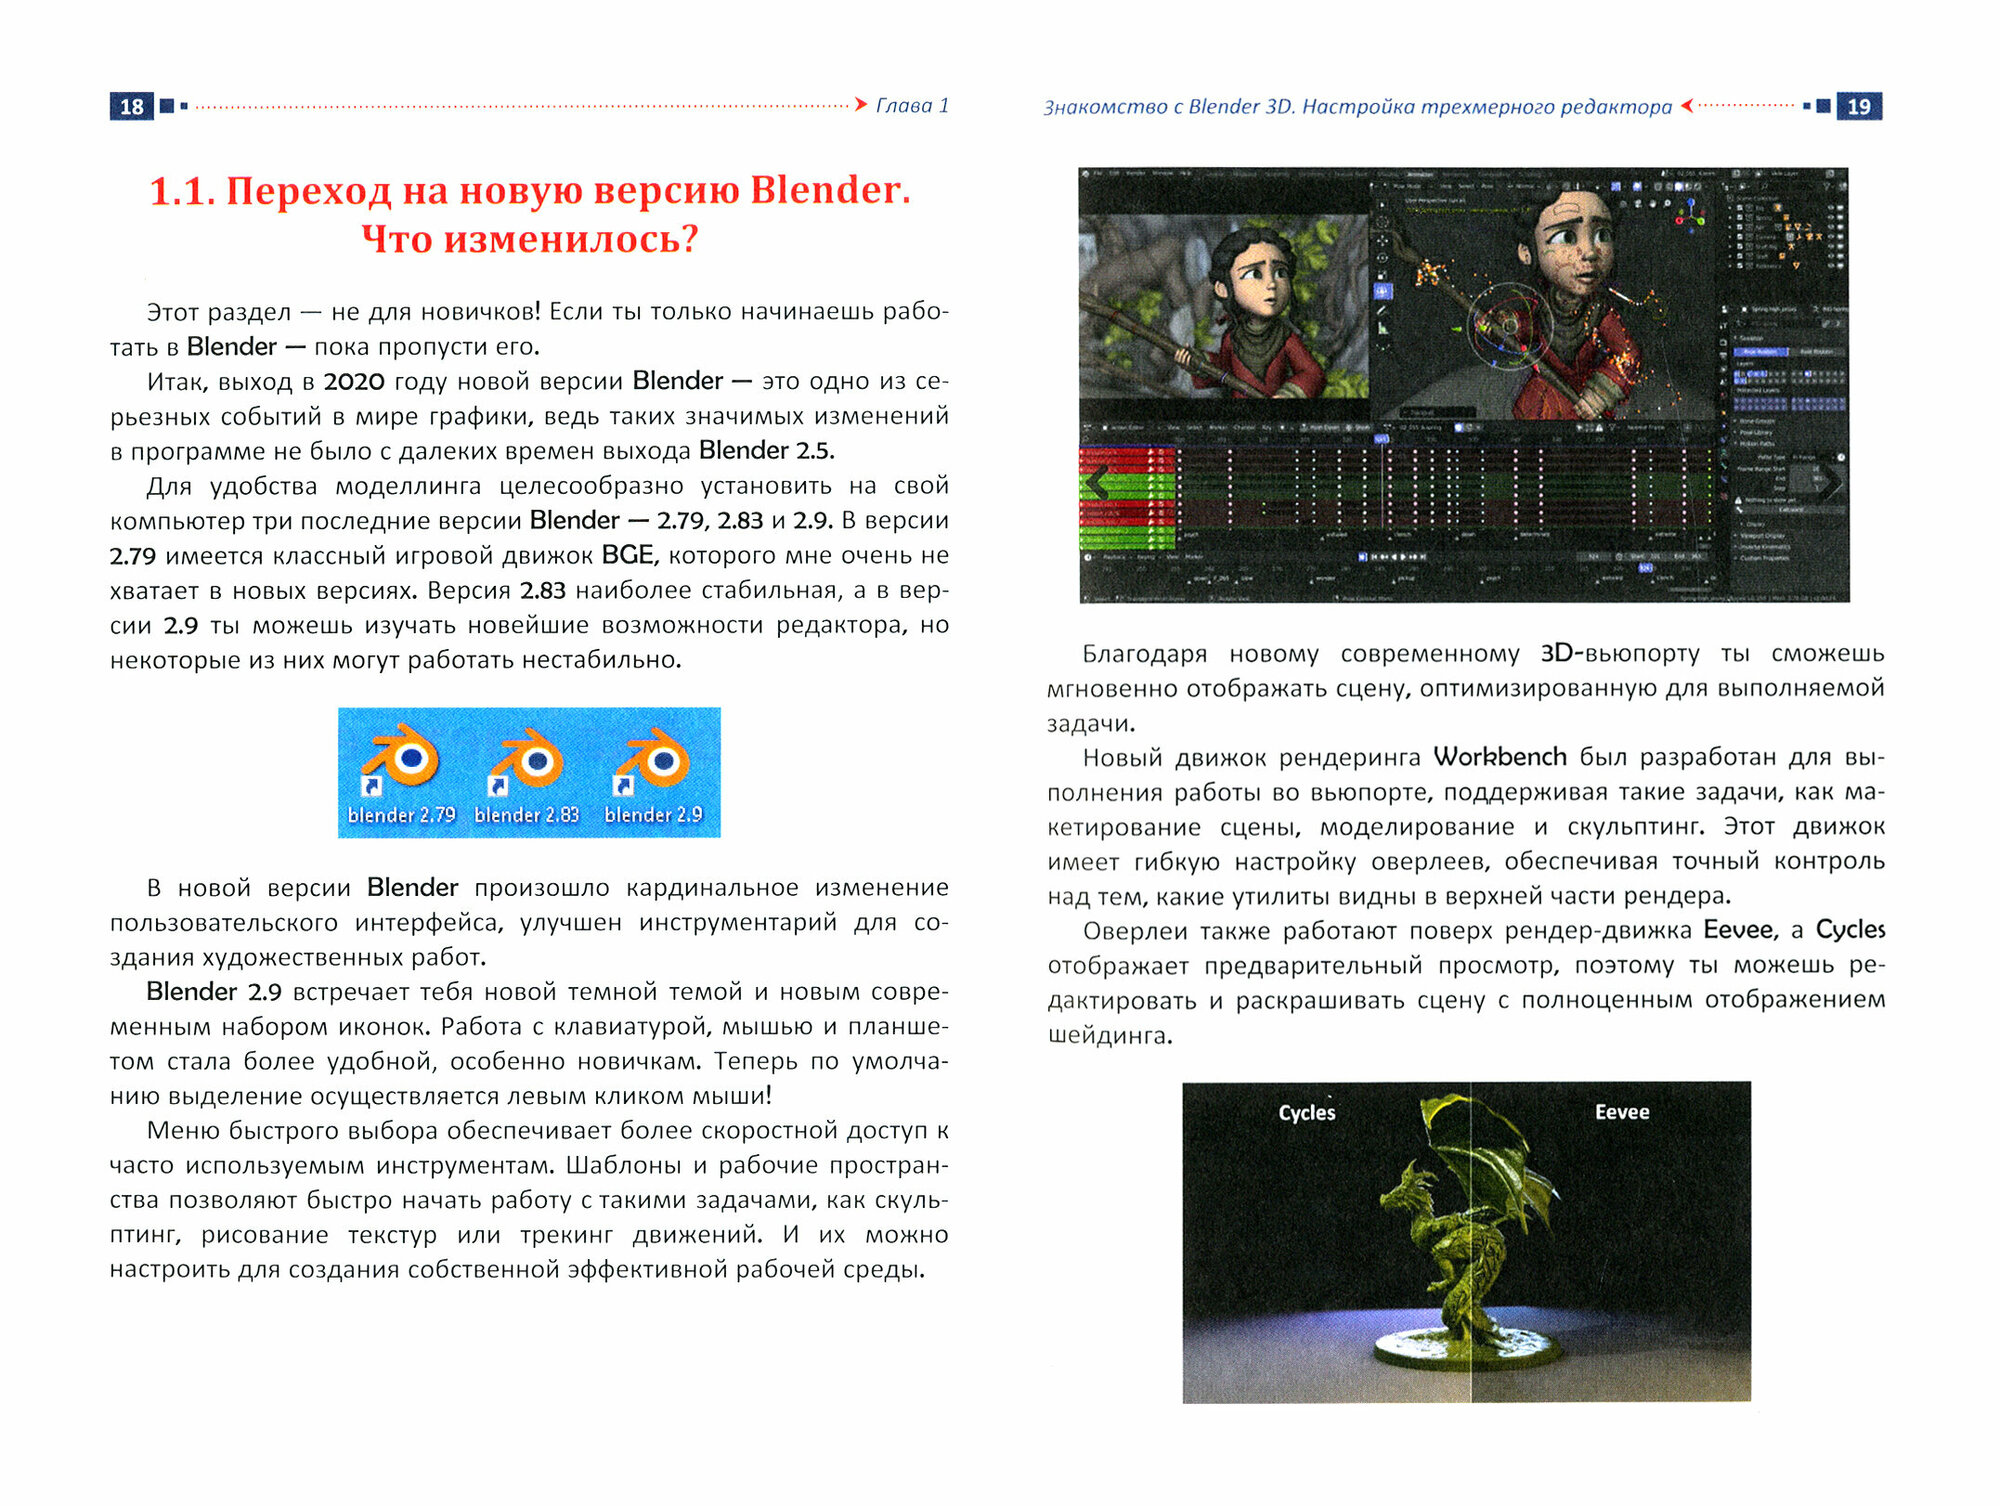 Учебник-самоучитель по трехмерной графике в Blender 3D. Моделирование, дизайн, анимация, спецэффекты - фото №5